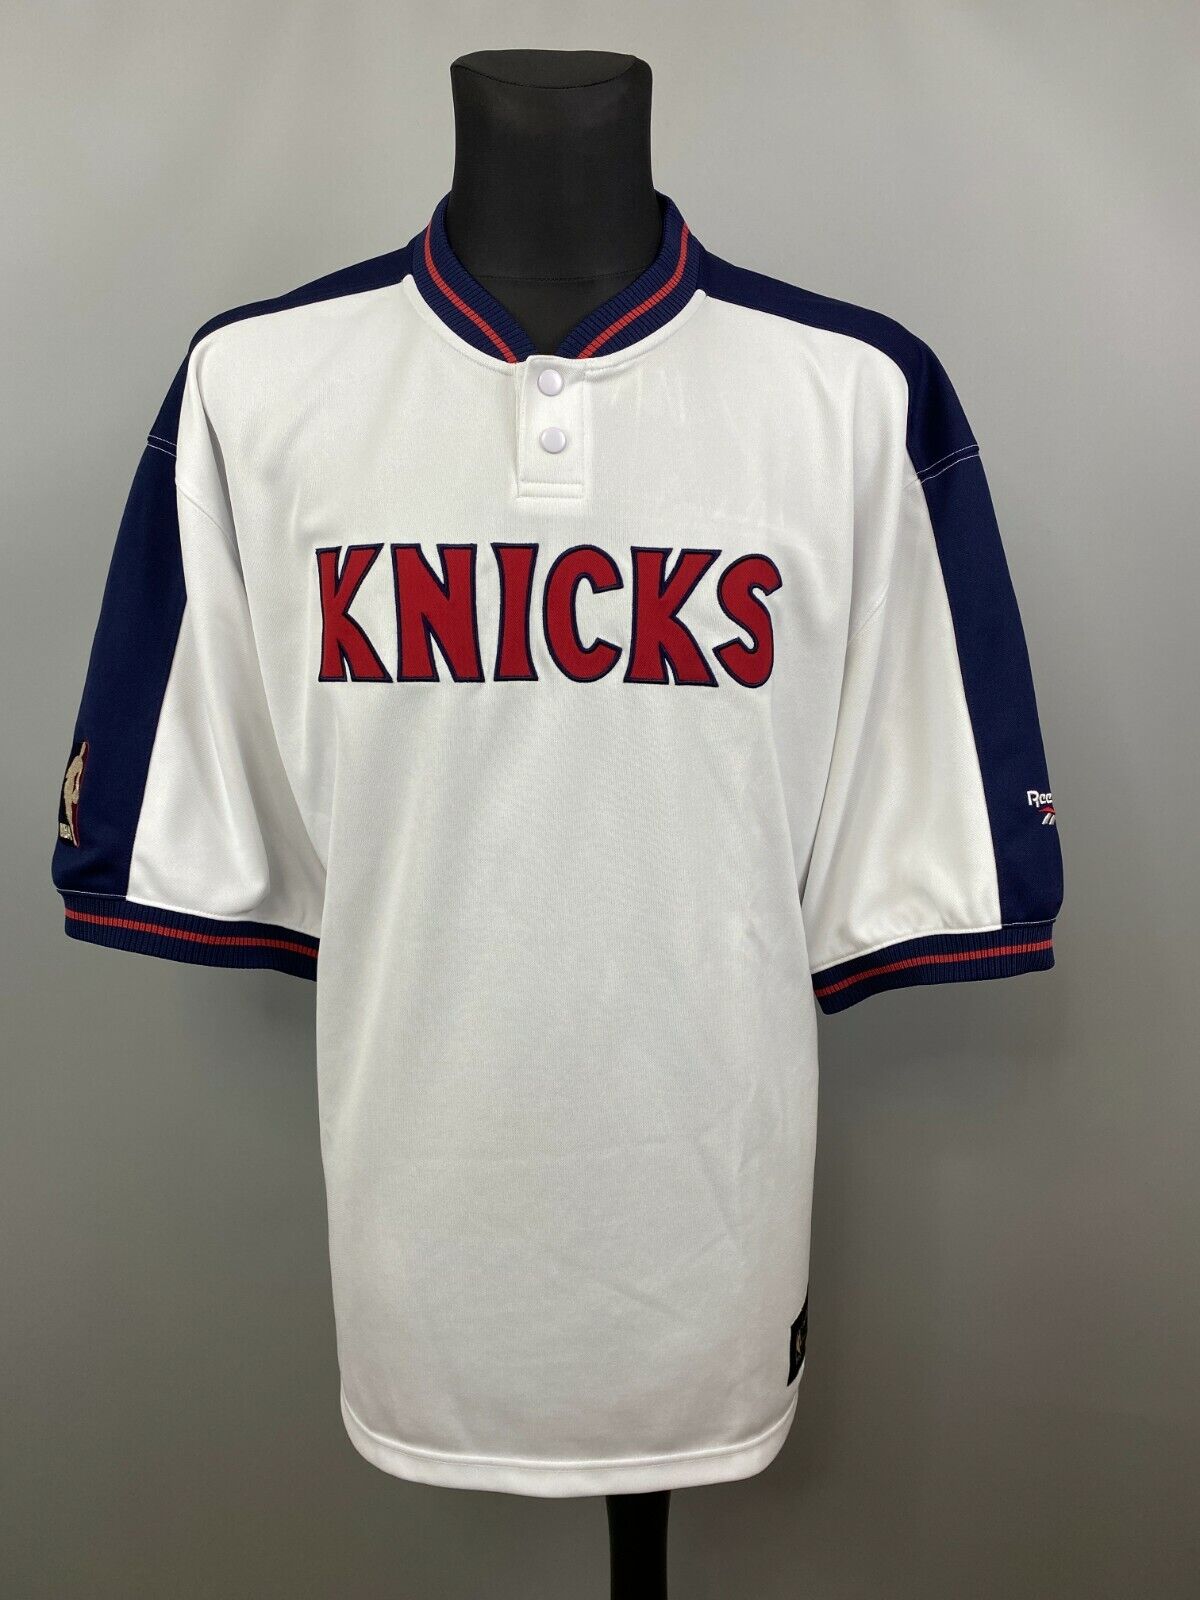 1979 knicks jersey